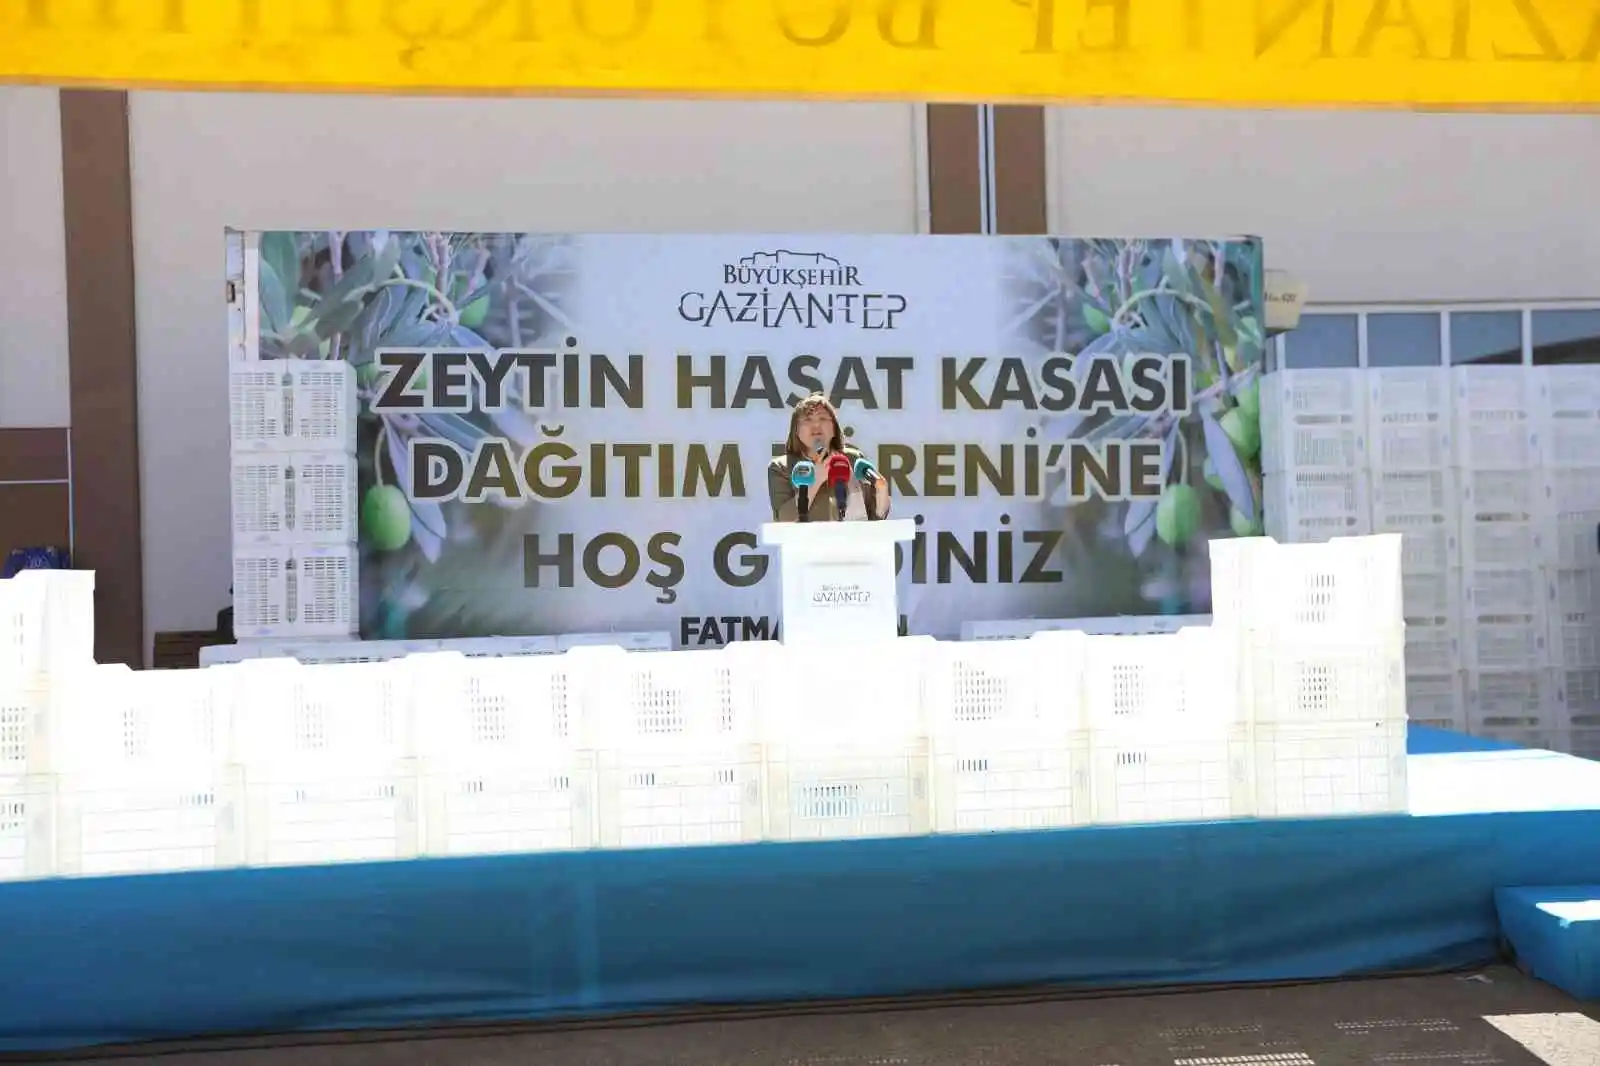 Gaziantep’te zeytin üreticilerine 40 bin hasat kasası dağıtılacak
